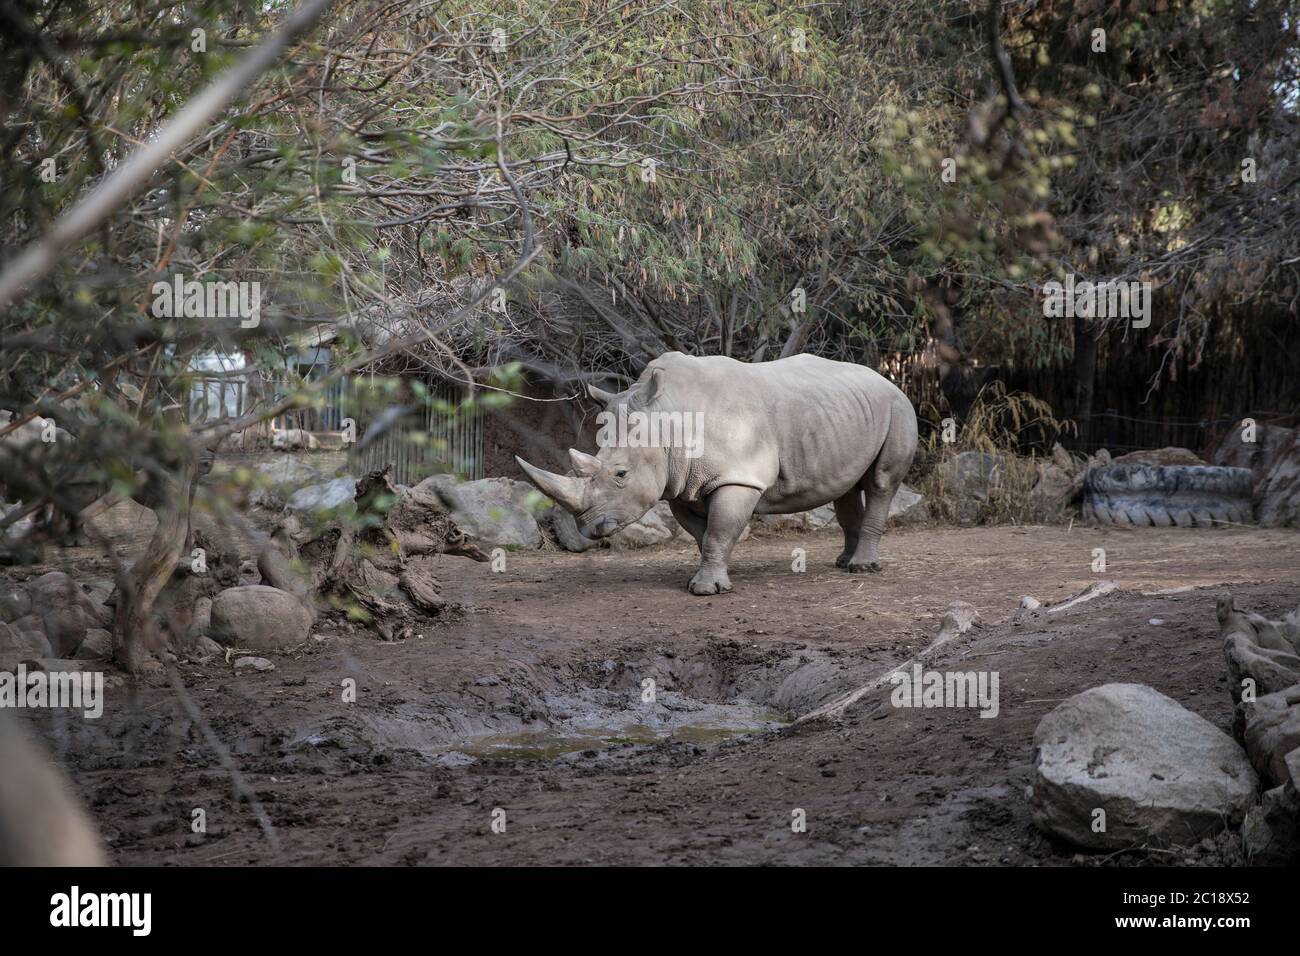 rhinocéros blanc entouré d'arbres Banque D'Images